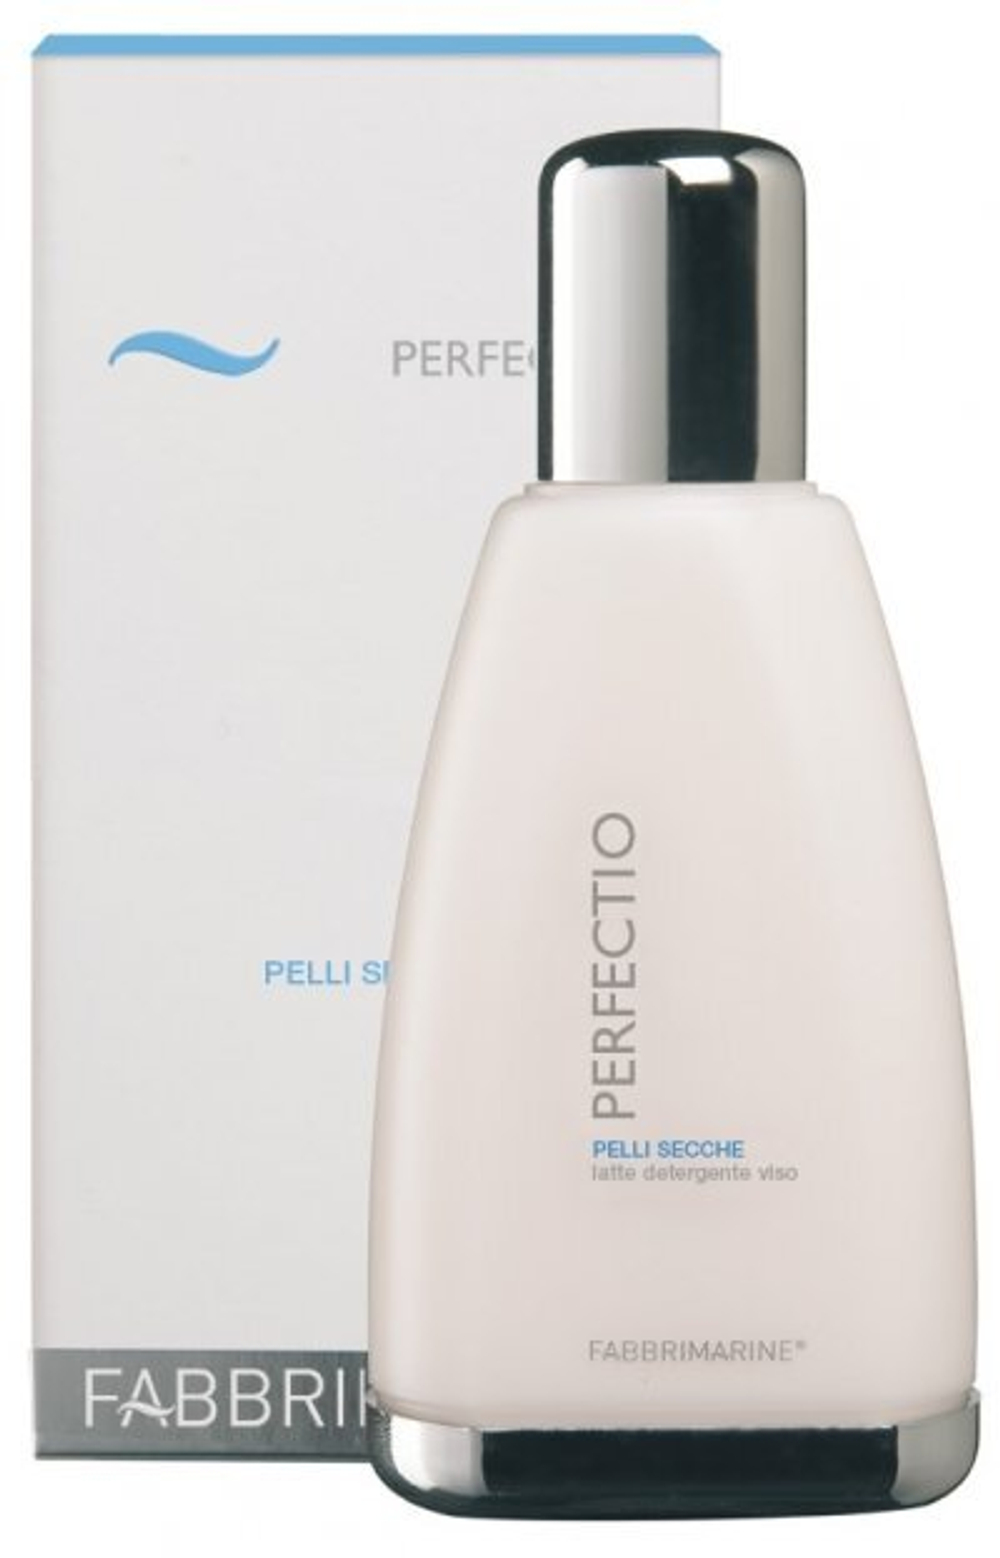 FABBRIMARINE Увлажняющее очищающее молочко Perfectio, Pelli Secche Latte detergente Dry skins cleansing milk 200 мл